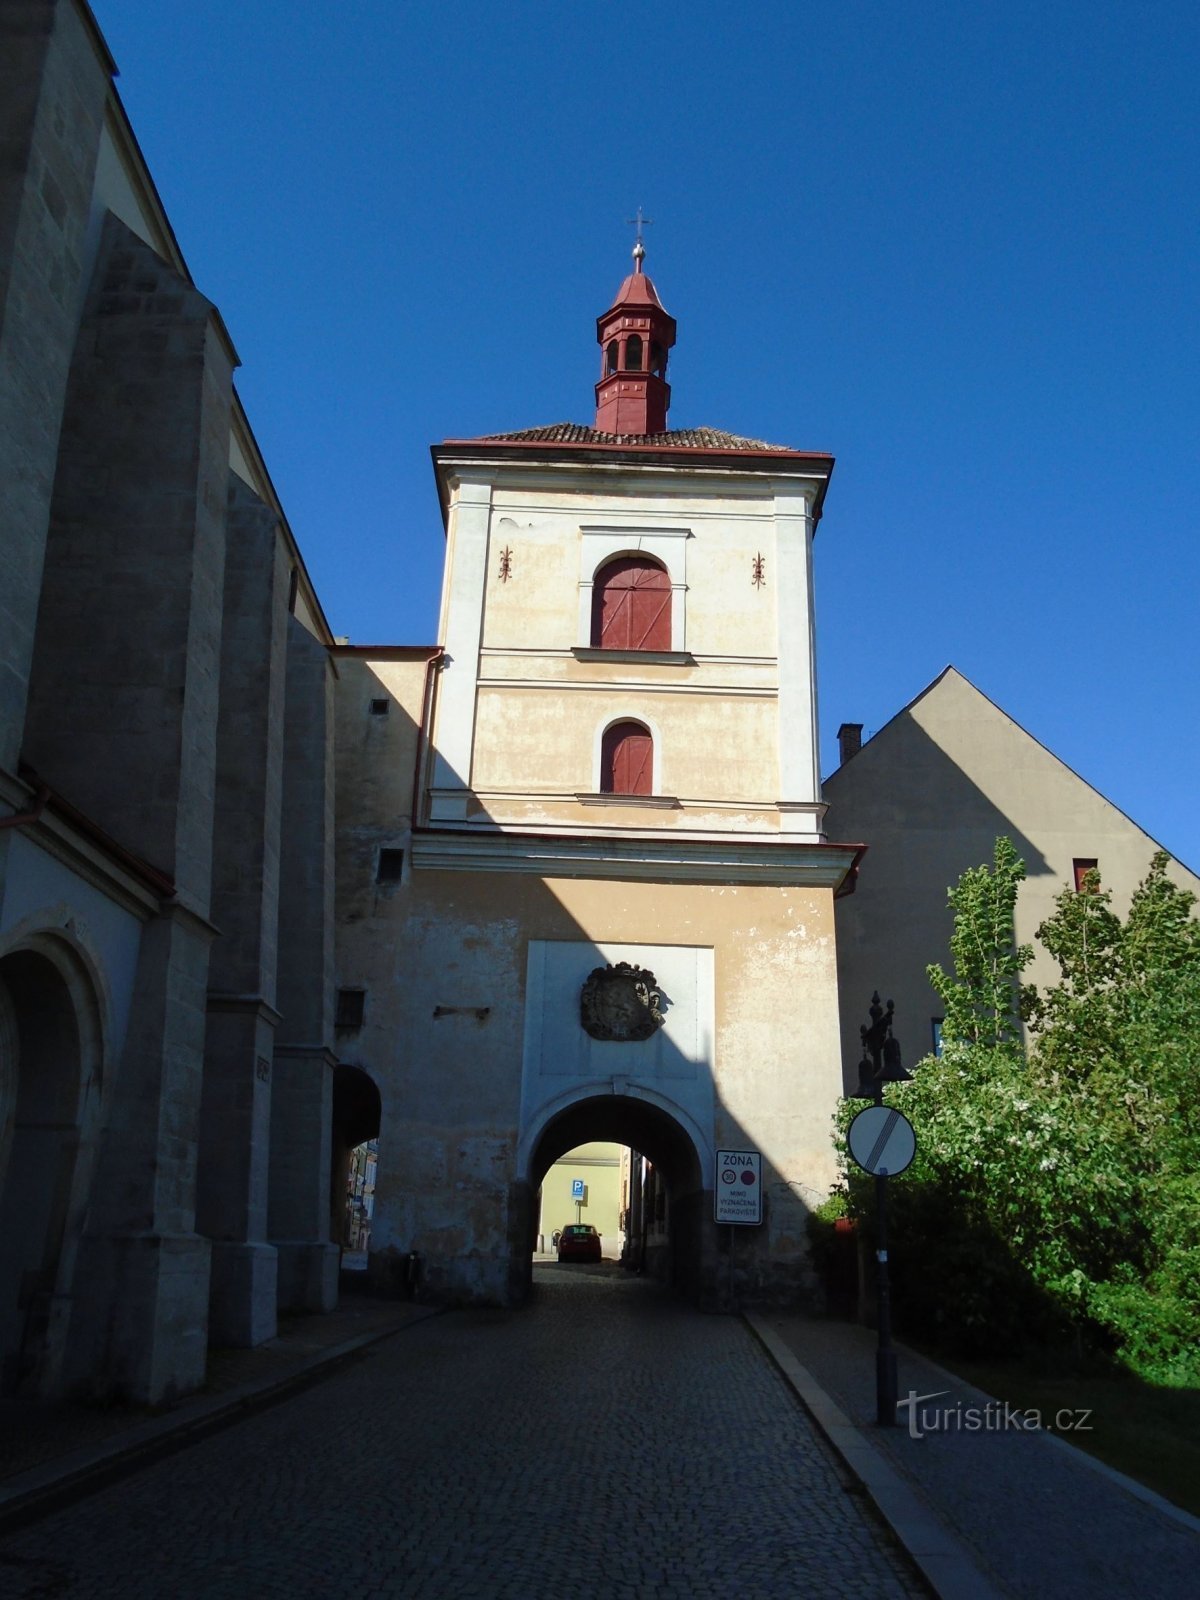 Portão da cidade com torre sineira (Jaroměř, 13.5.2018/XNUMX/XNUMX)